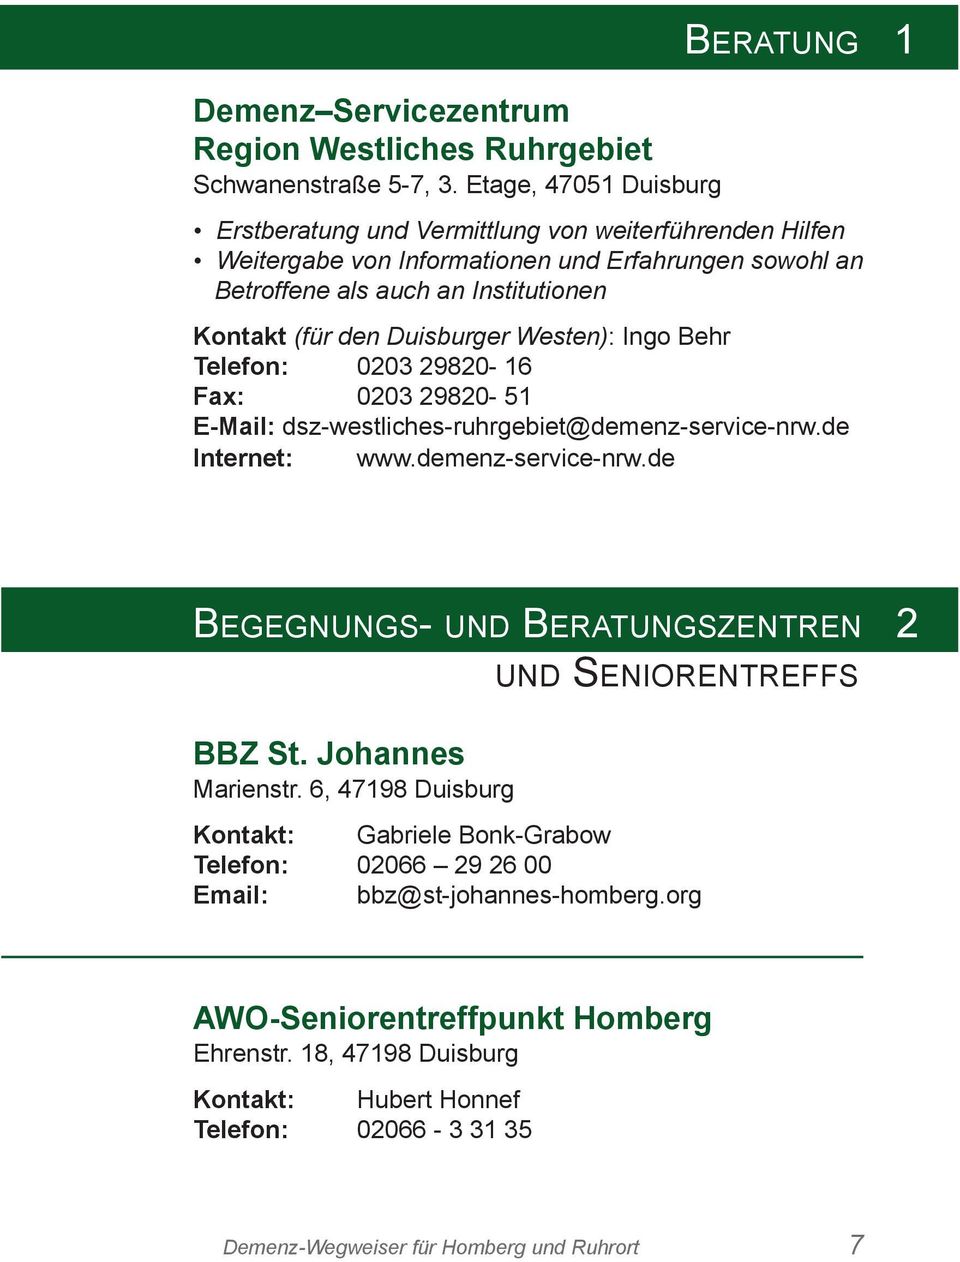 den Duisburger Westen): Ingo Behr Telefon: 0203 29820-16 Fax: 0203 29820-51 E-Mail: dsz-westliches-ruhrgebiet@demenz-service-nrw.de Internet: www.demenz-service-nrw.de BEgEgnUngS- UnD BERATUngSZEnTREn 2 UnD SEnIoREnTREFFS BBZ St.